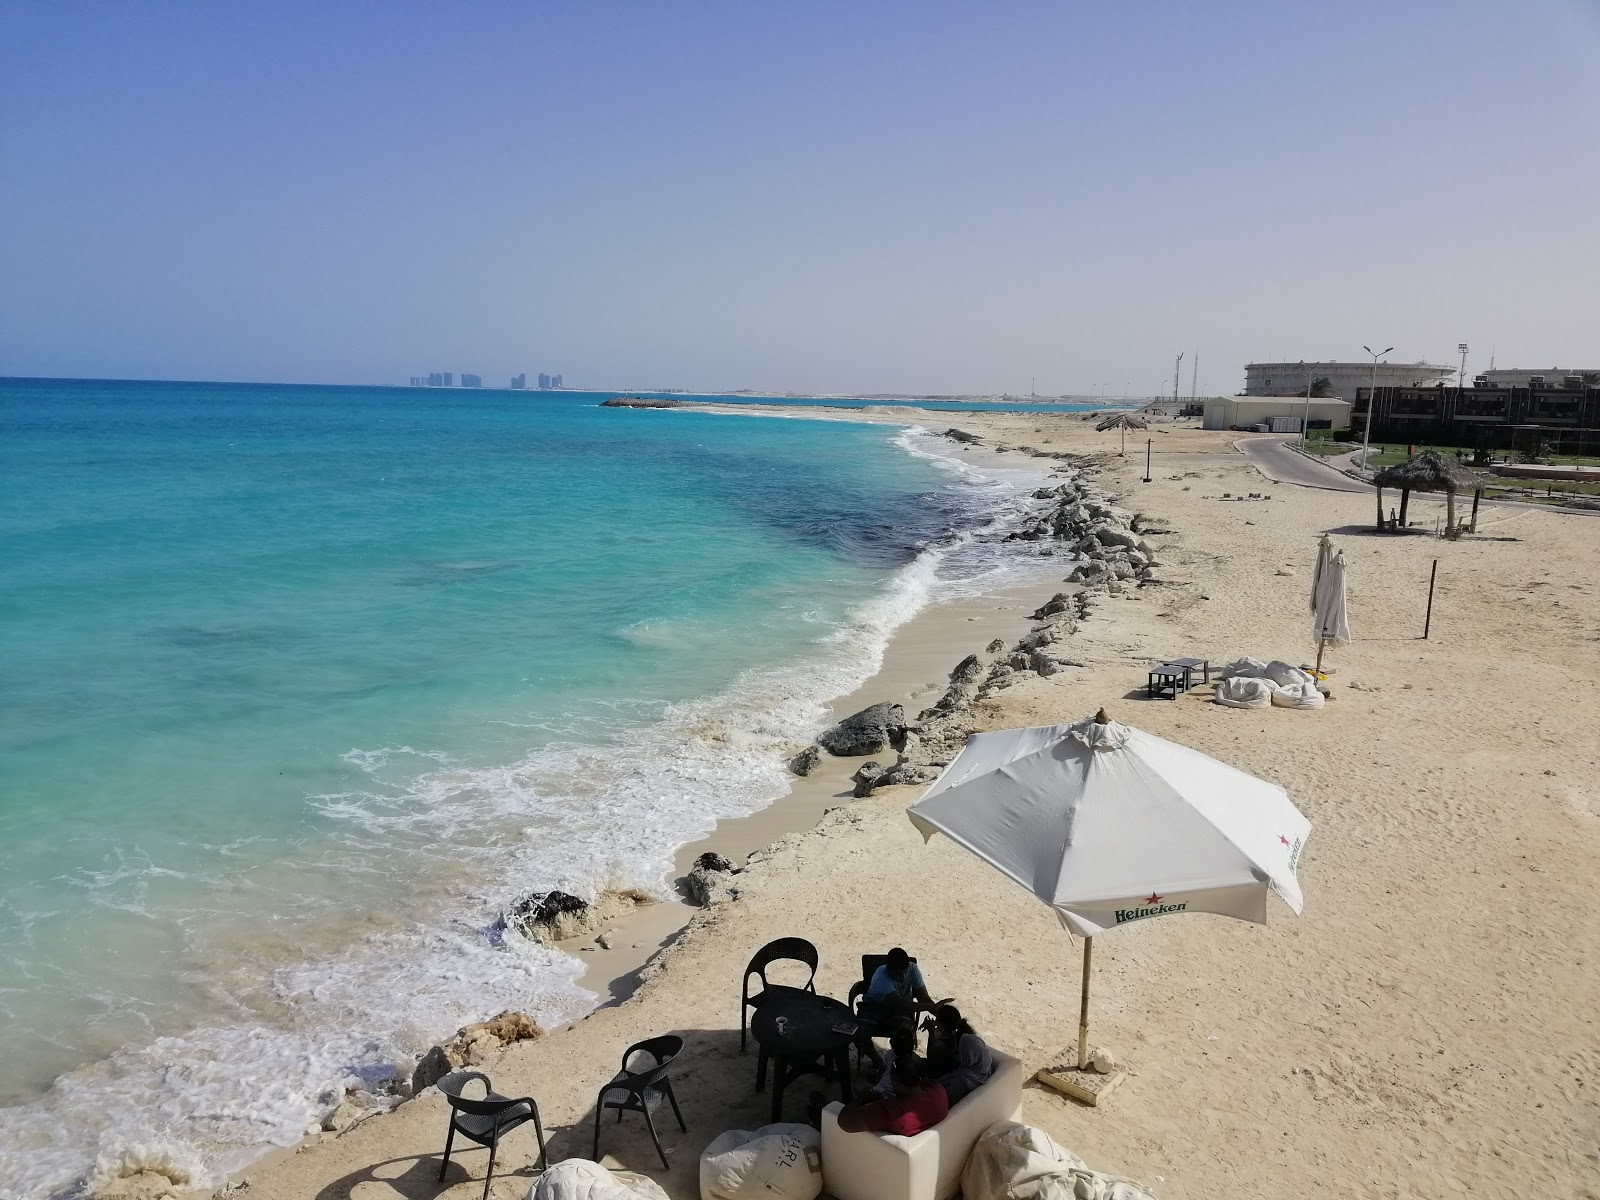 Al-Hamra Beach'in fotoğrafı beyaz kum yüzey ile